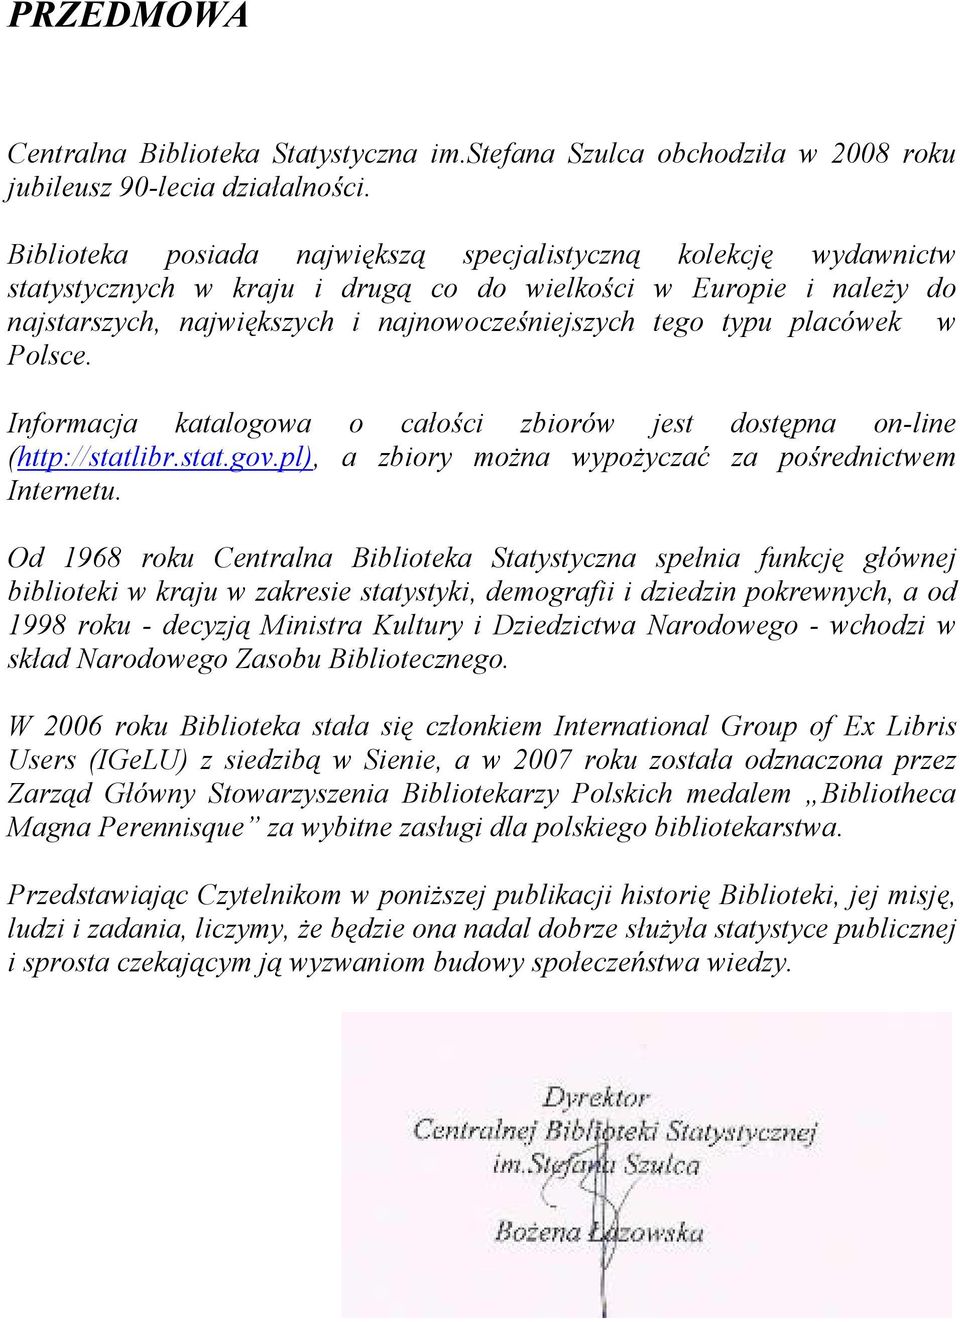 placówek w Polsce. Informacja katalogowa o całości zbiorów jest dostępna on-line (http://statlibr.stat.gov.pl), a zbiory moŝna wypoŝyczać za pośrednictwem Internetu.